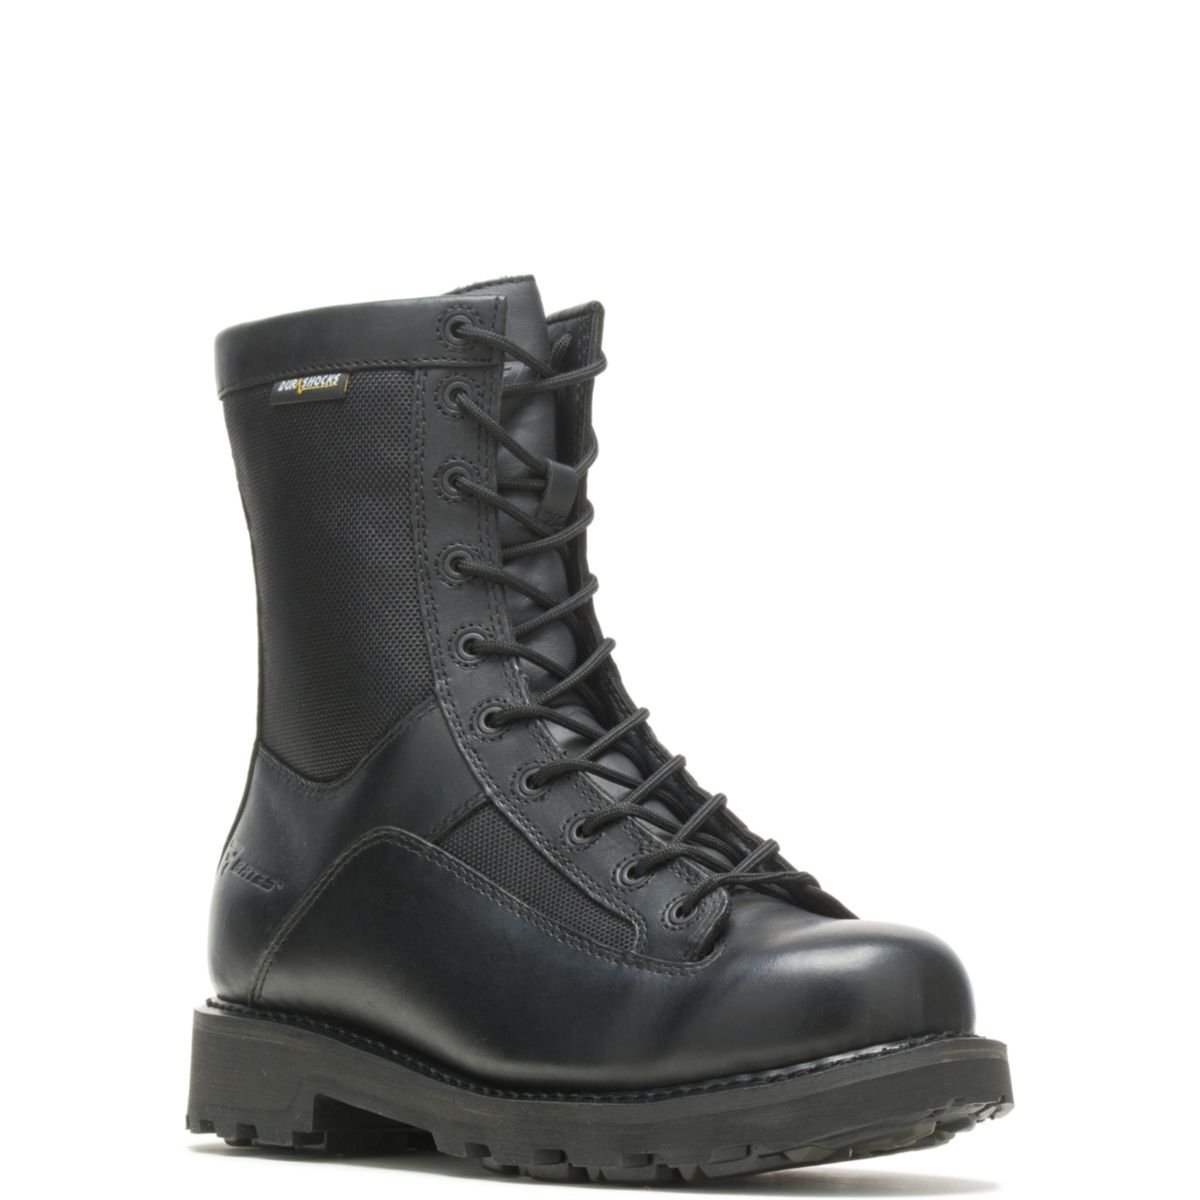 Bates Men's 8 DuraShocksÂ® Lace-to-Toe Side Zip Boot Black - E03140 BLACK - BLACK, 13-M